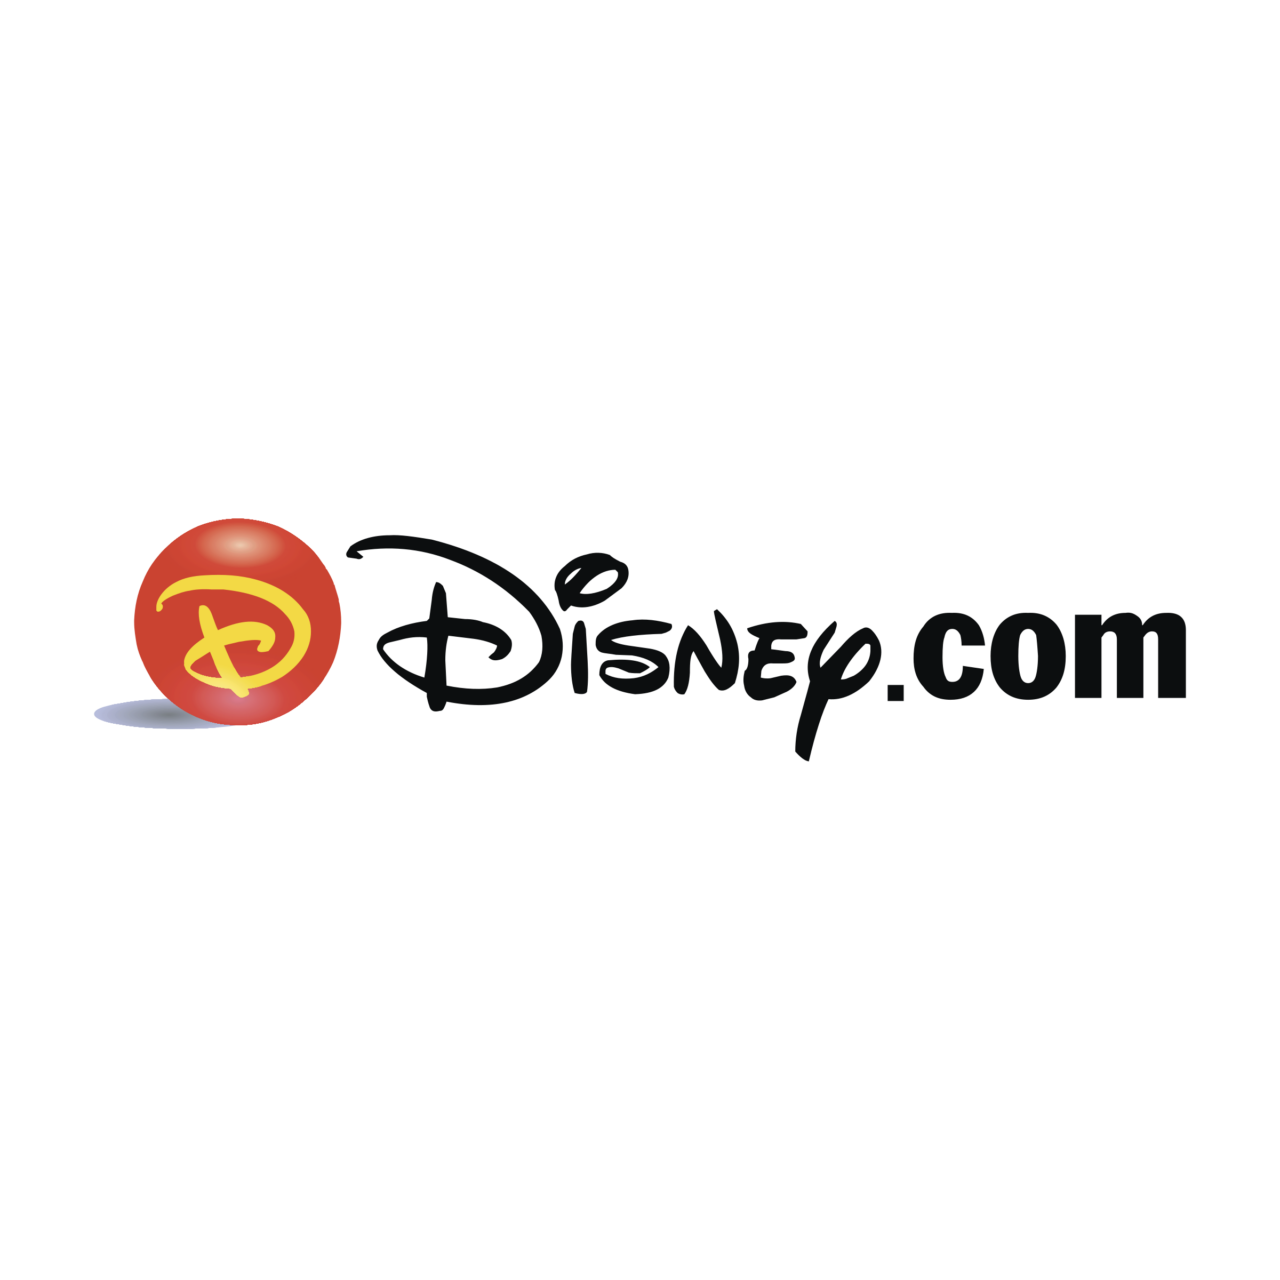 Прокси-сервер Disney.com